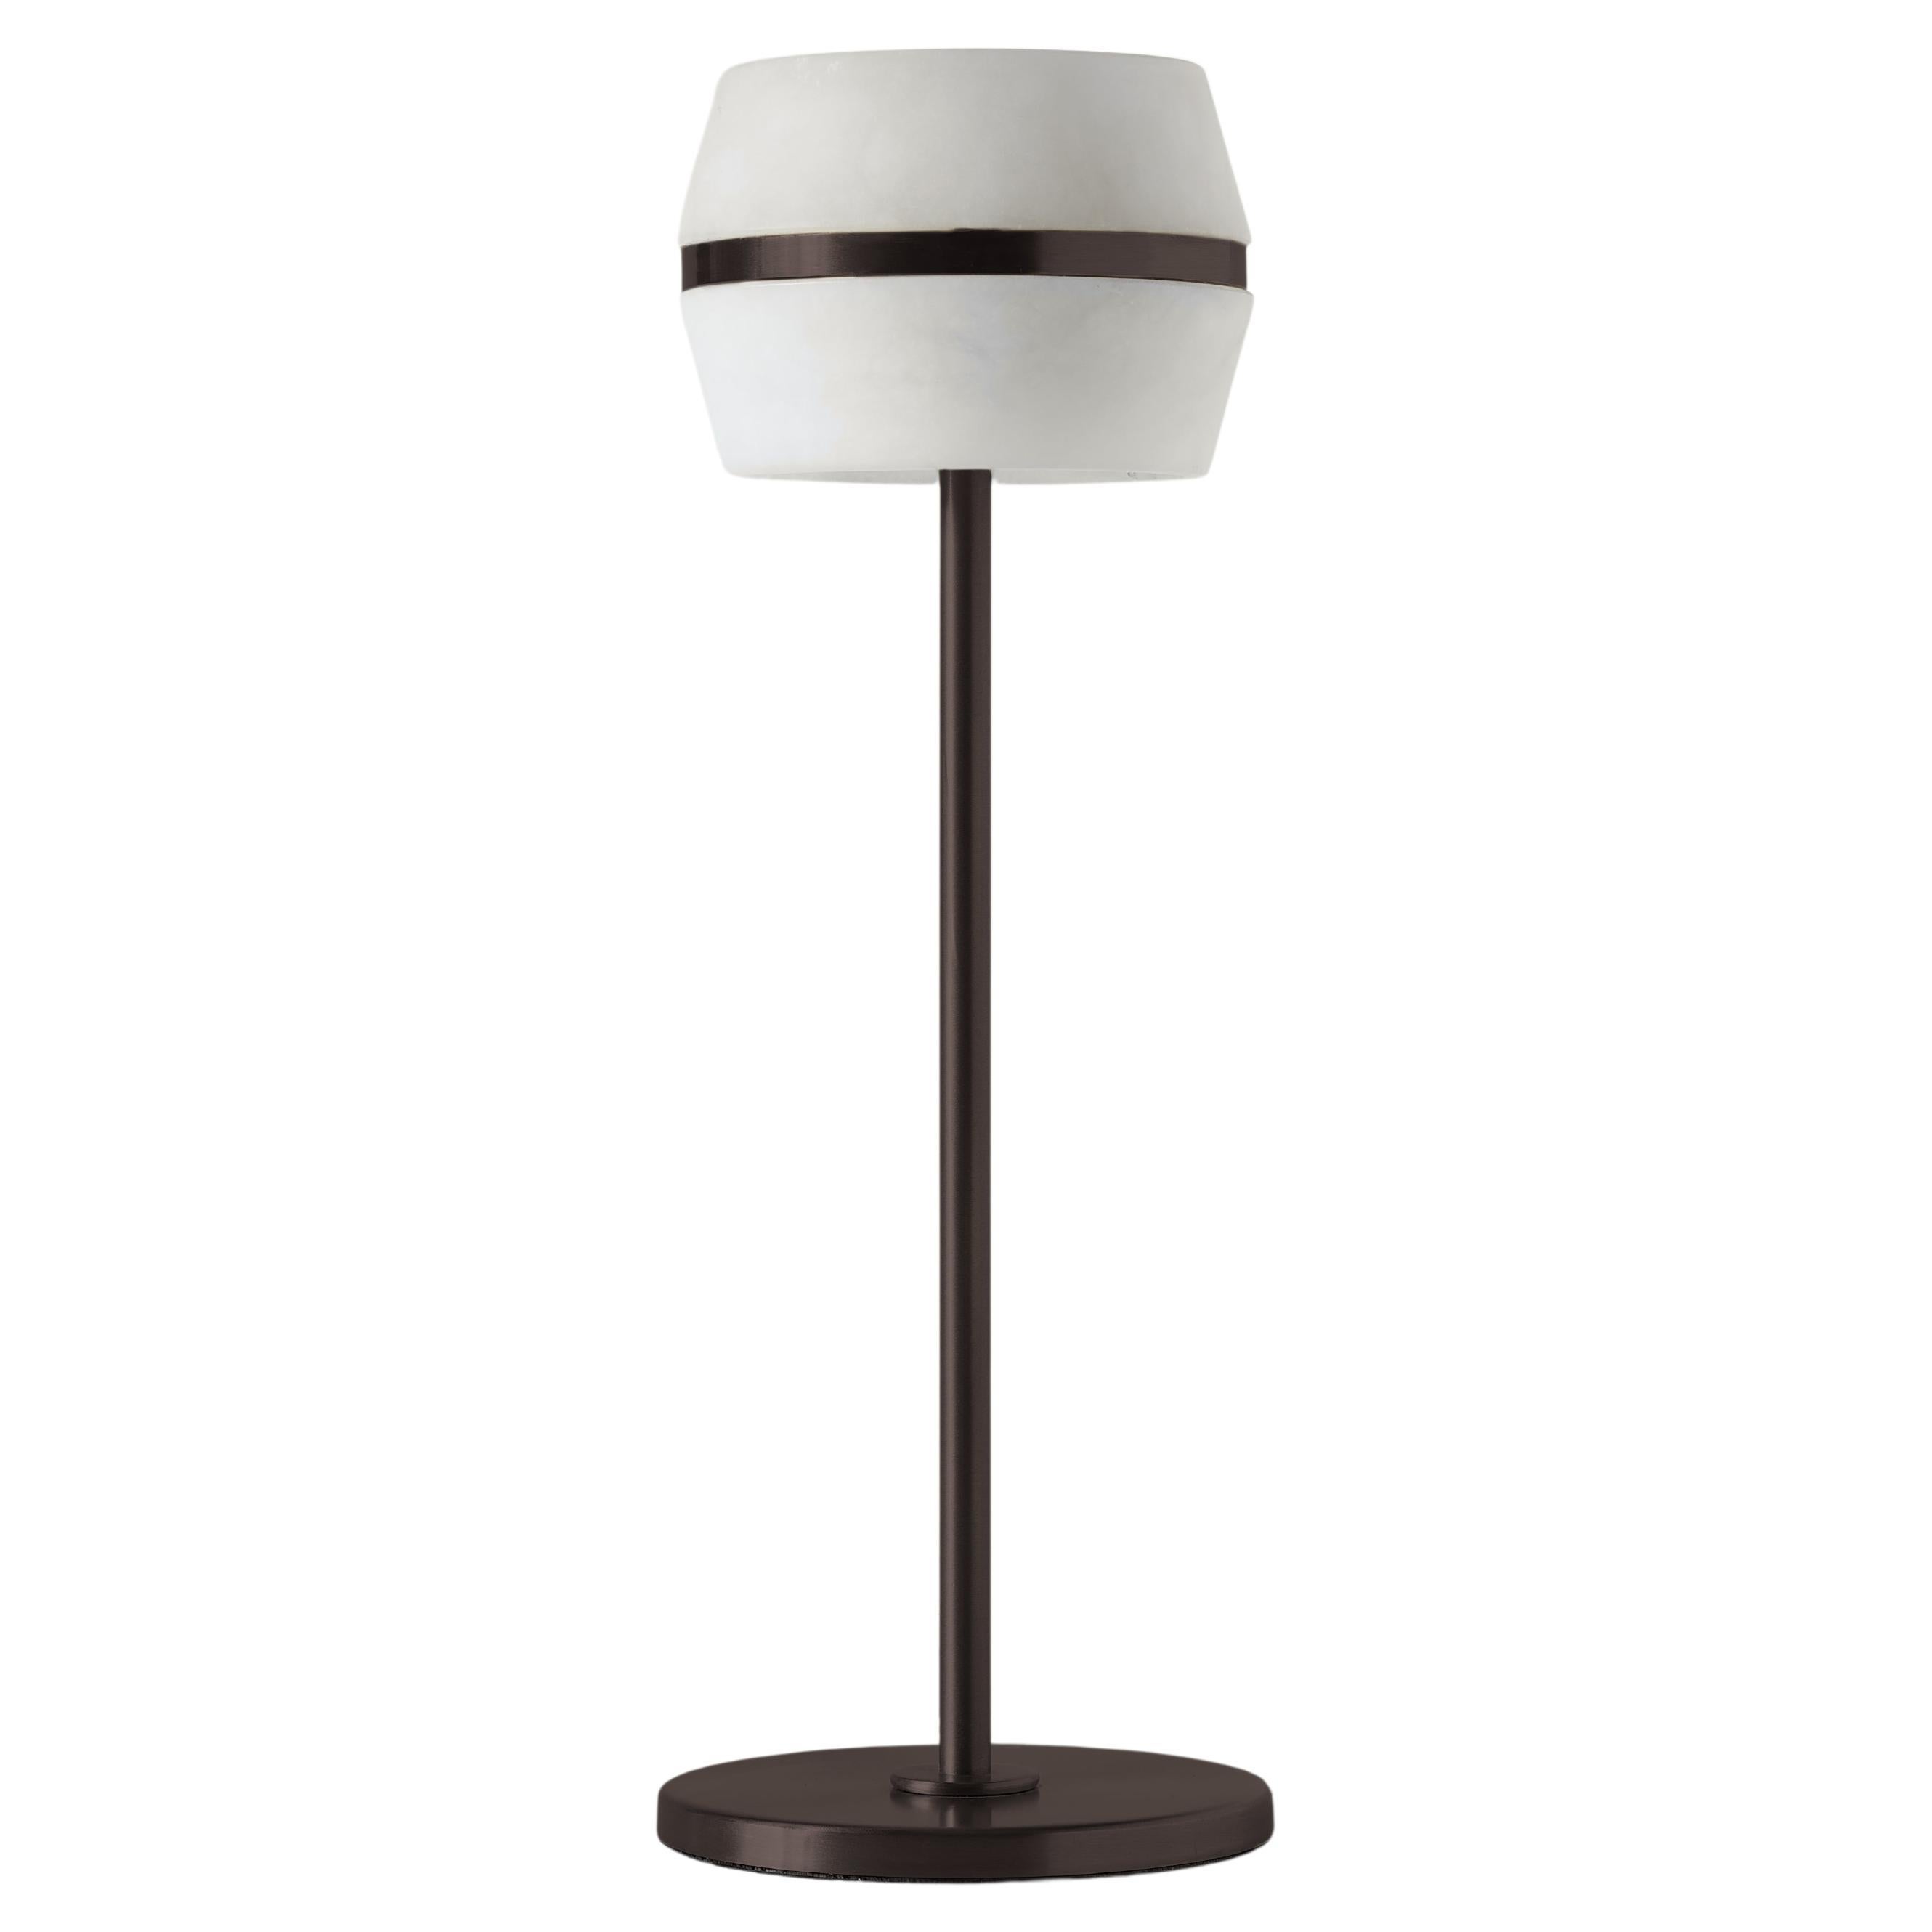 Modern Italian Table Lamp "Tommy Wireless", Light Bronze